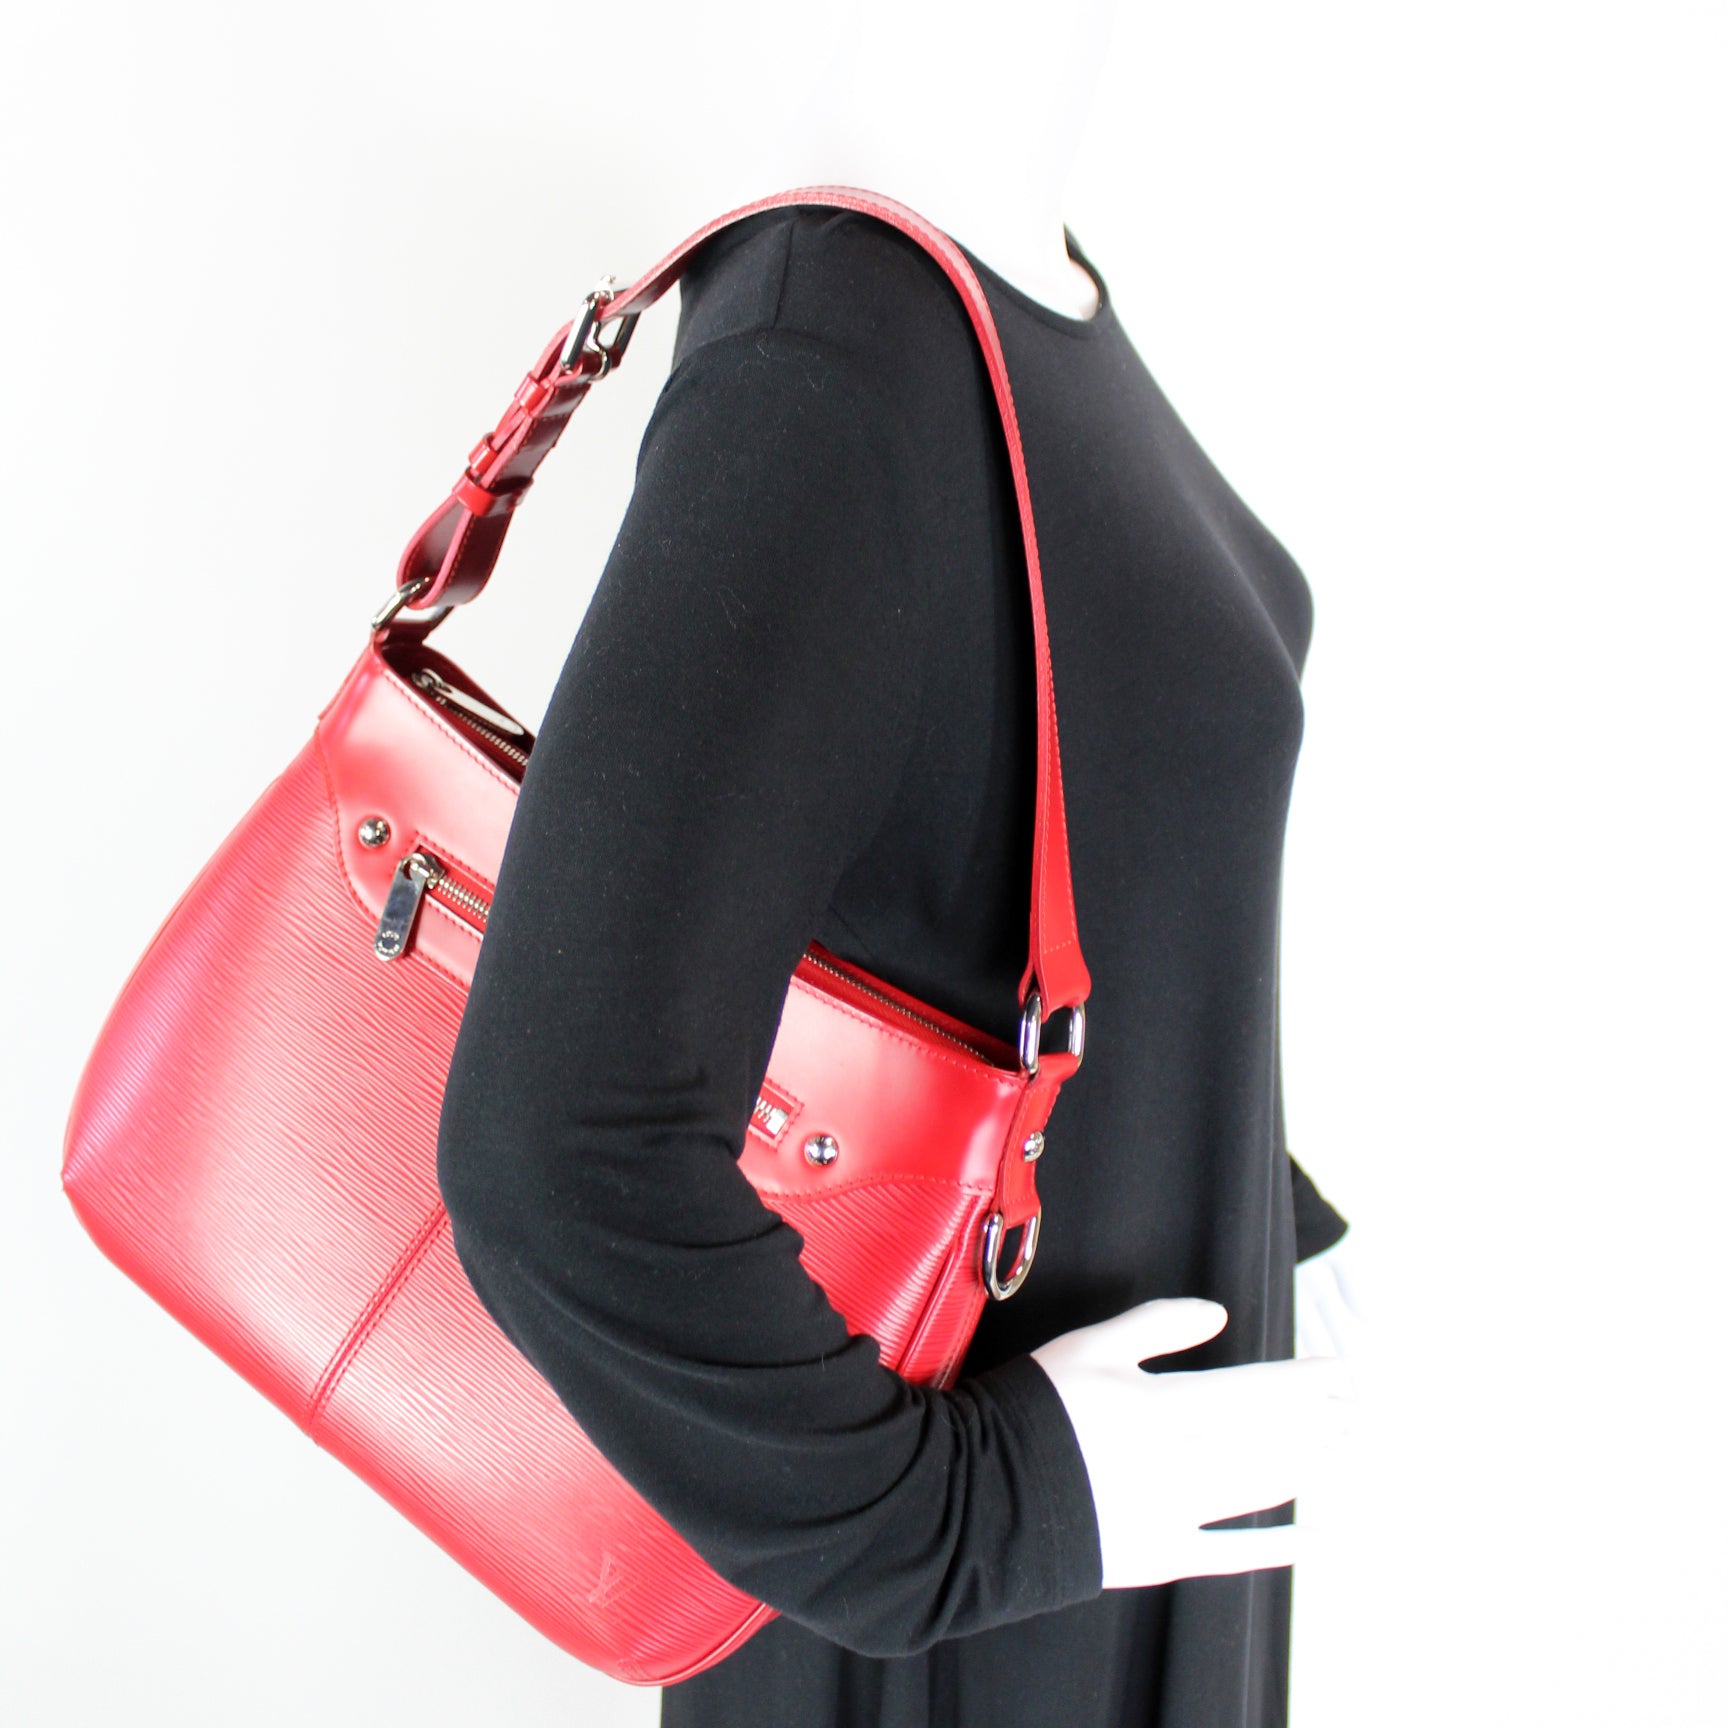 Turenne GM Epi – Keeks Designer Handbags